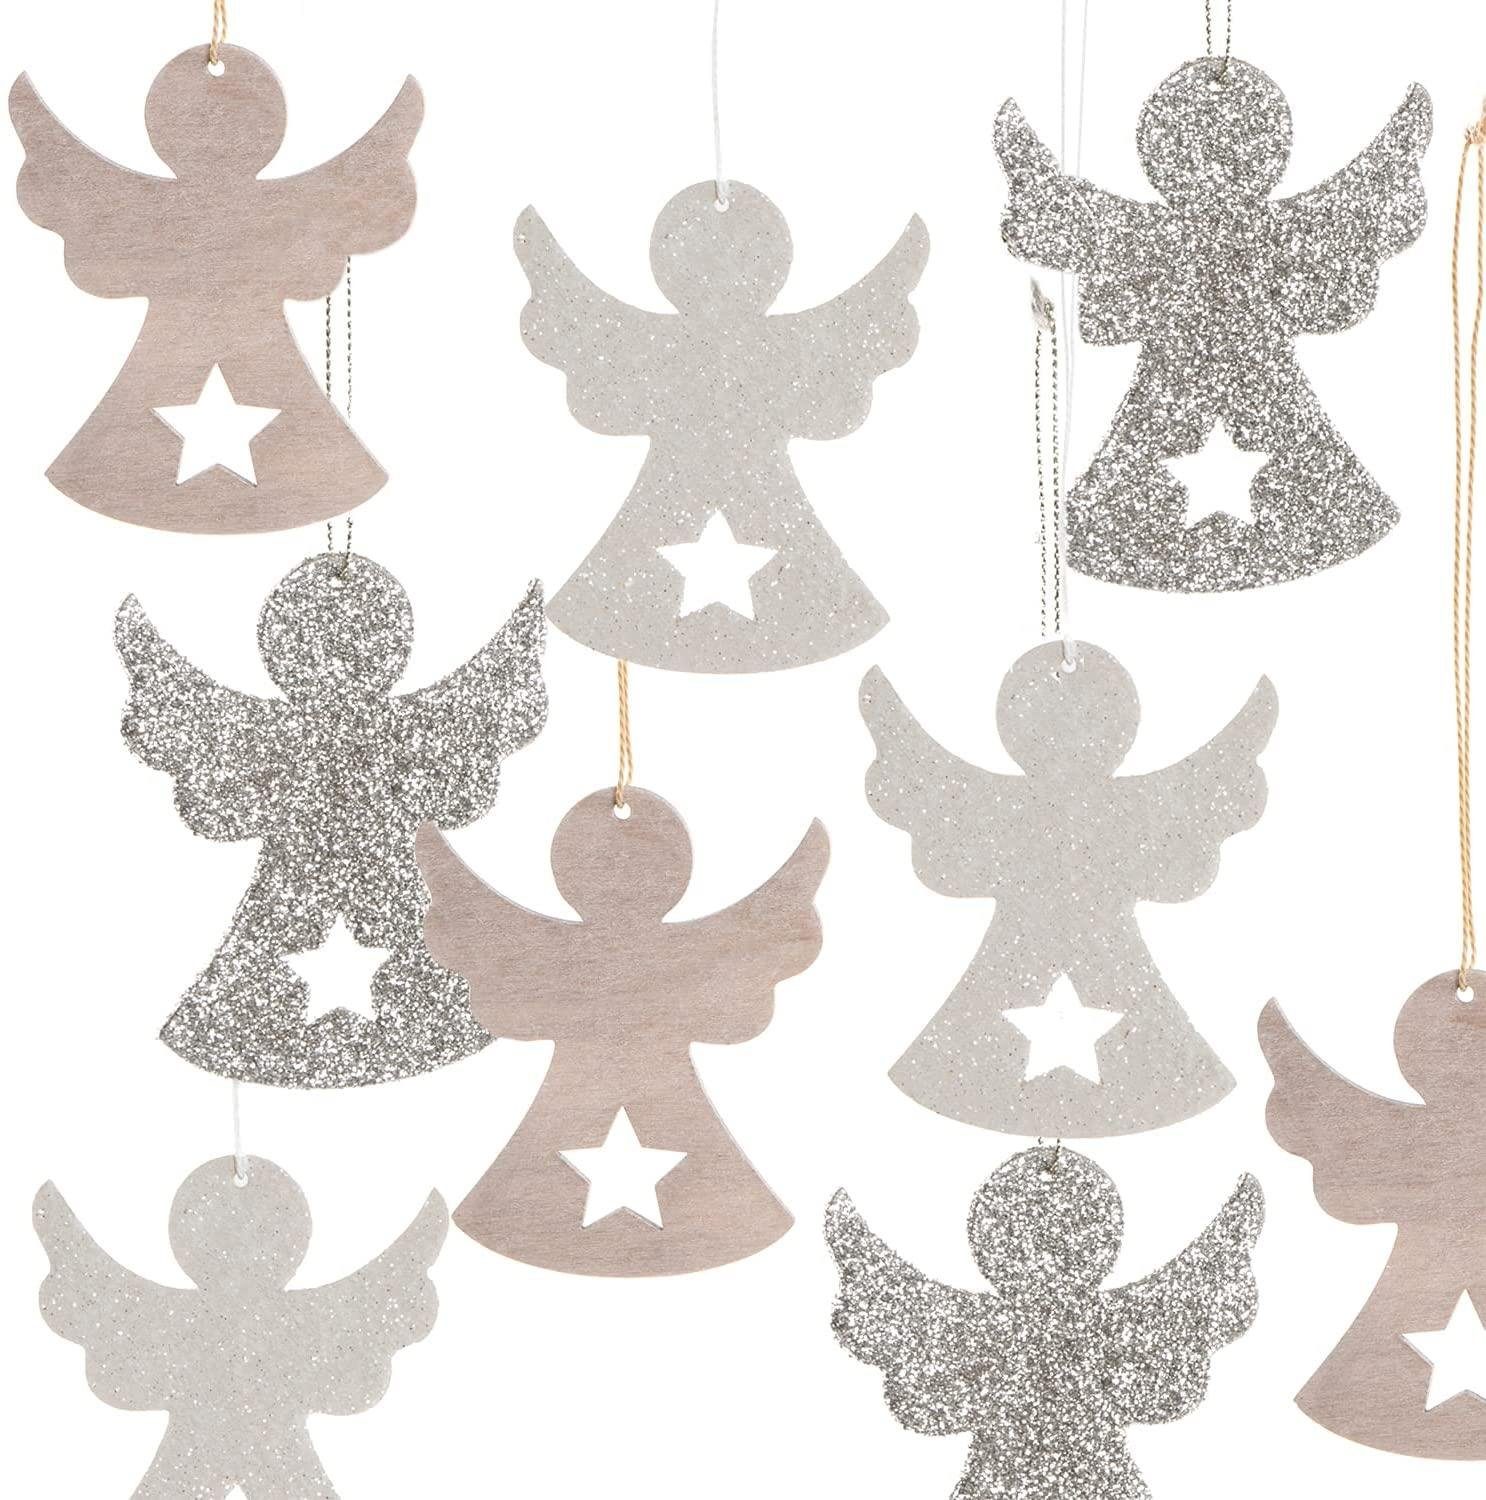 Logbuch-Verlag Baumbehang glitzernde Engel Anhänger aus Holz mit Glitzer (9 St), in 3 Farben mit Sternen und Schnur zum Aufhängen